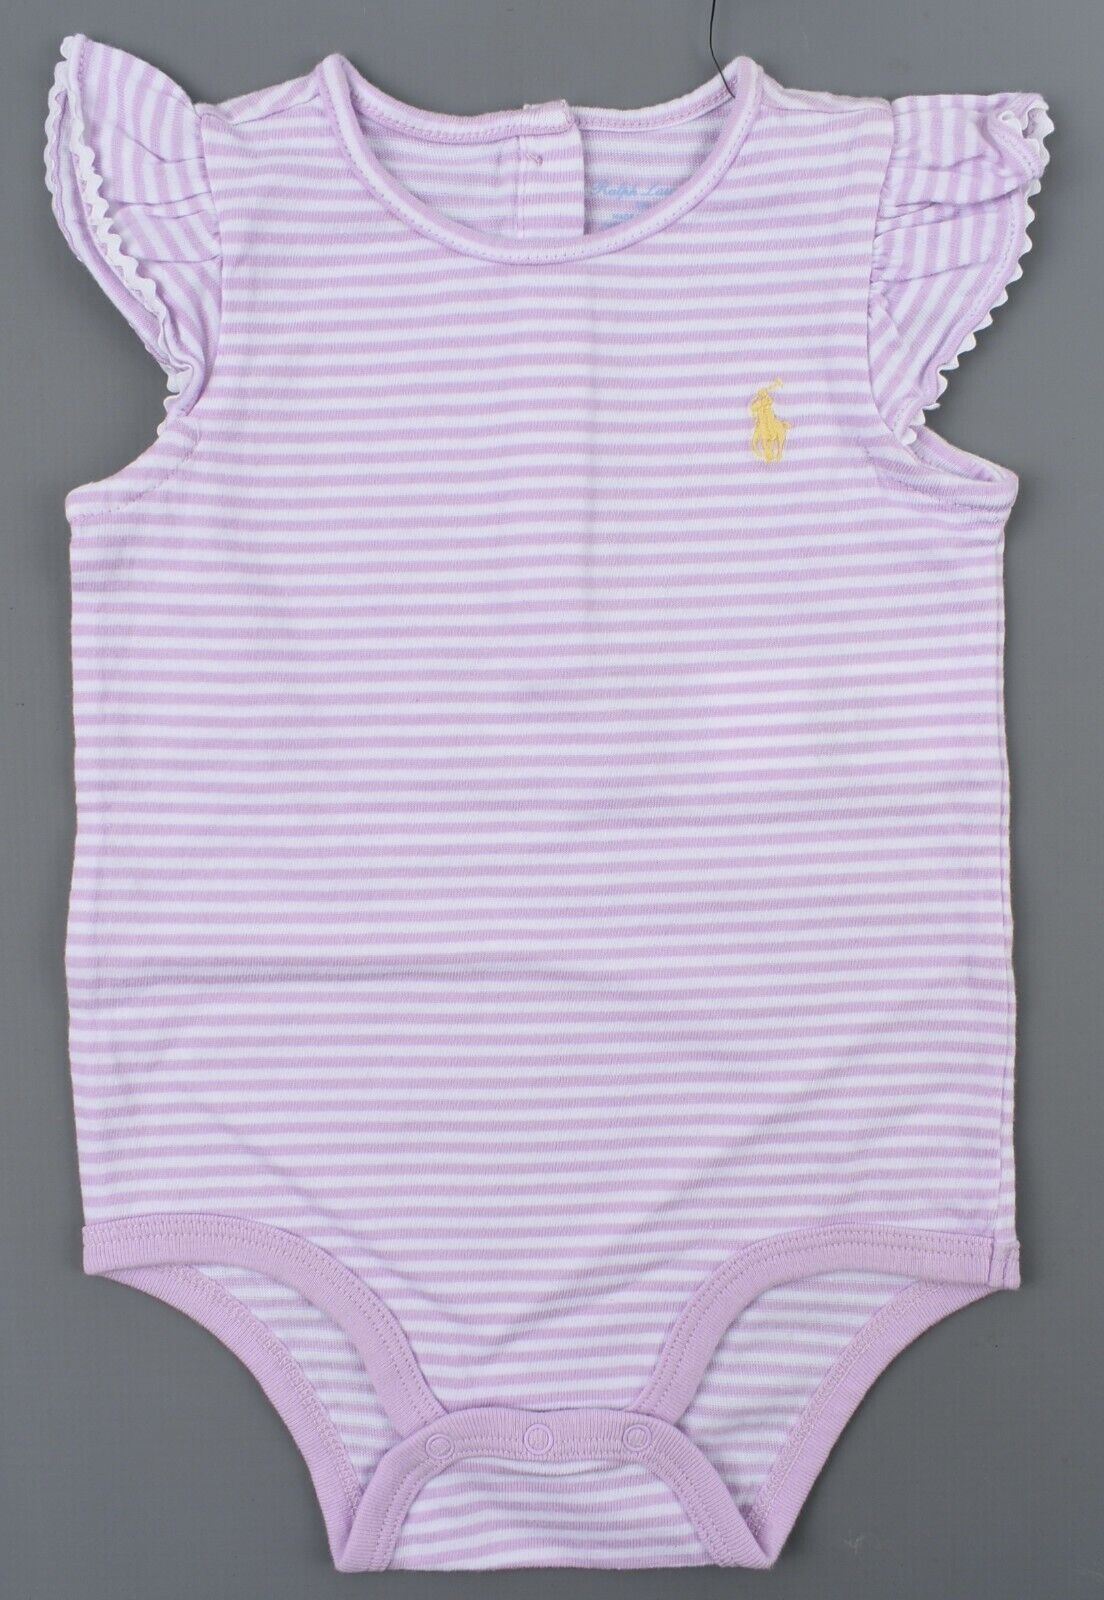 RALPH LAUREN Baby Girls' Ruffle Sleeve Babygrow, Purple/White Striped, size 9 m